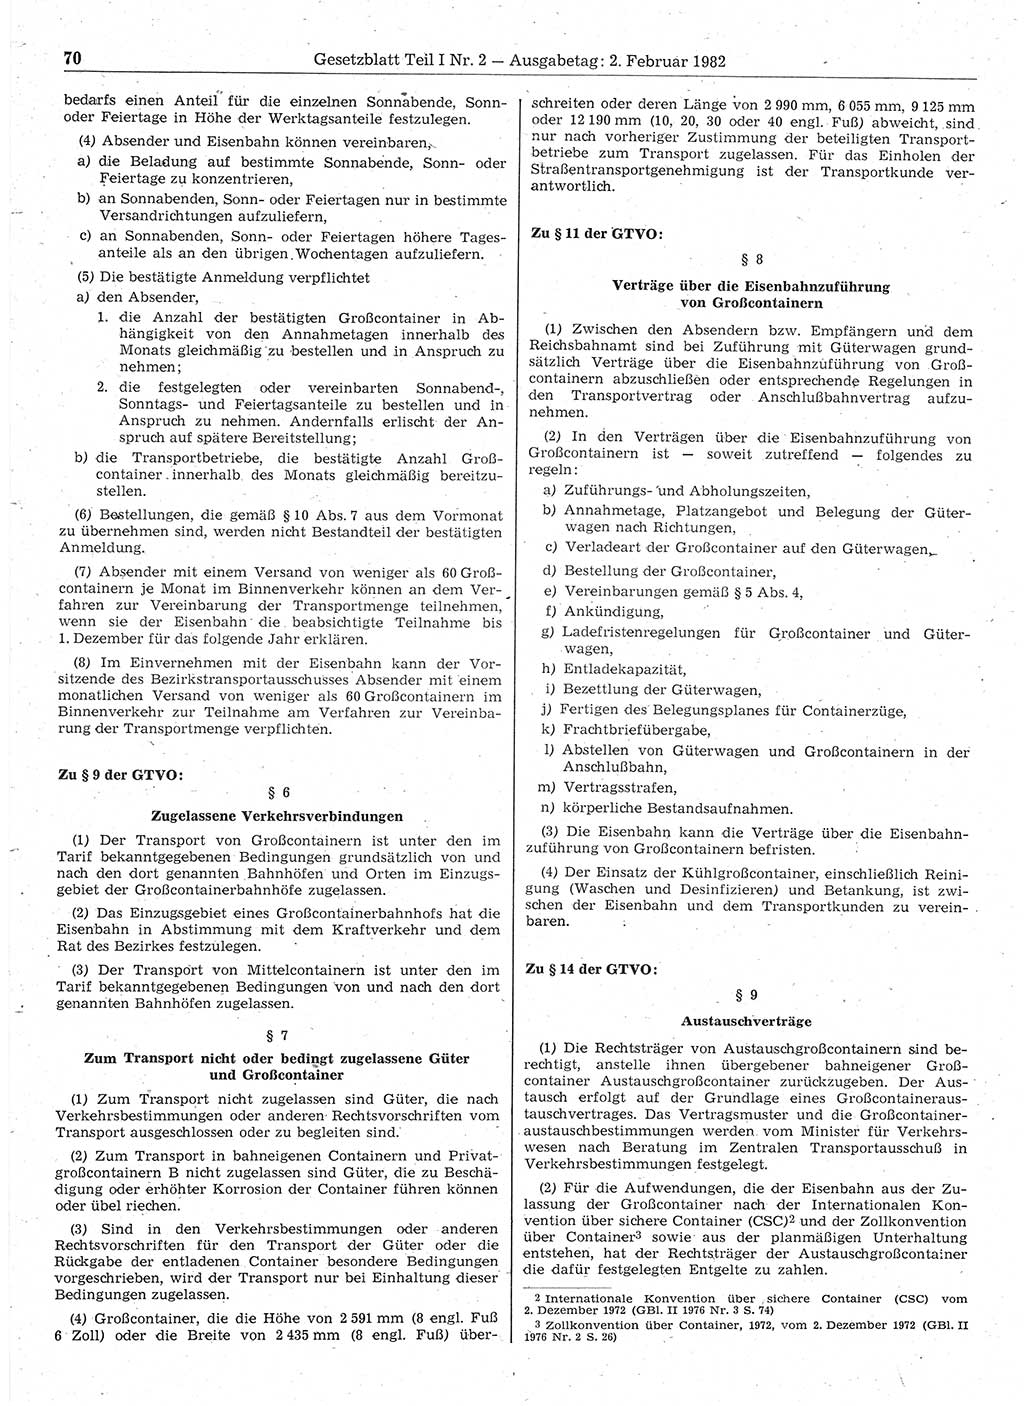 Gesetzblatt (GBl.) der Deutschen Demokratischen Republik (DDR) Teil Ⅰ 1982, Seite 70 (GBl. DDR Ⅰ 1982, S. 70)